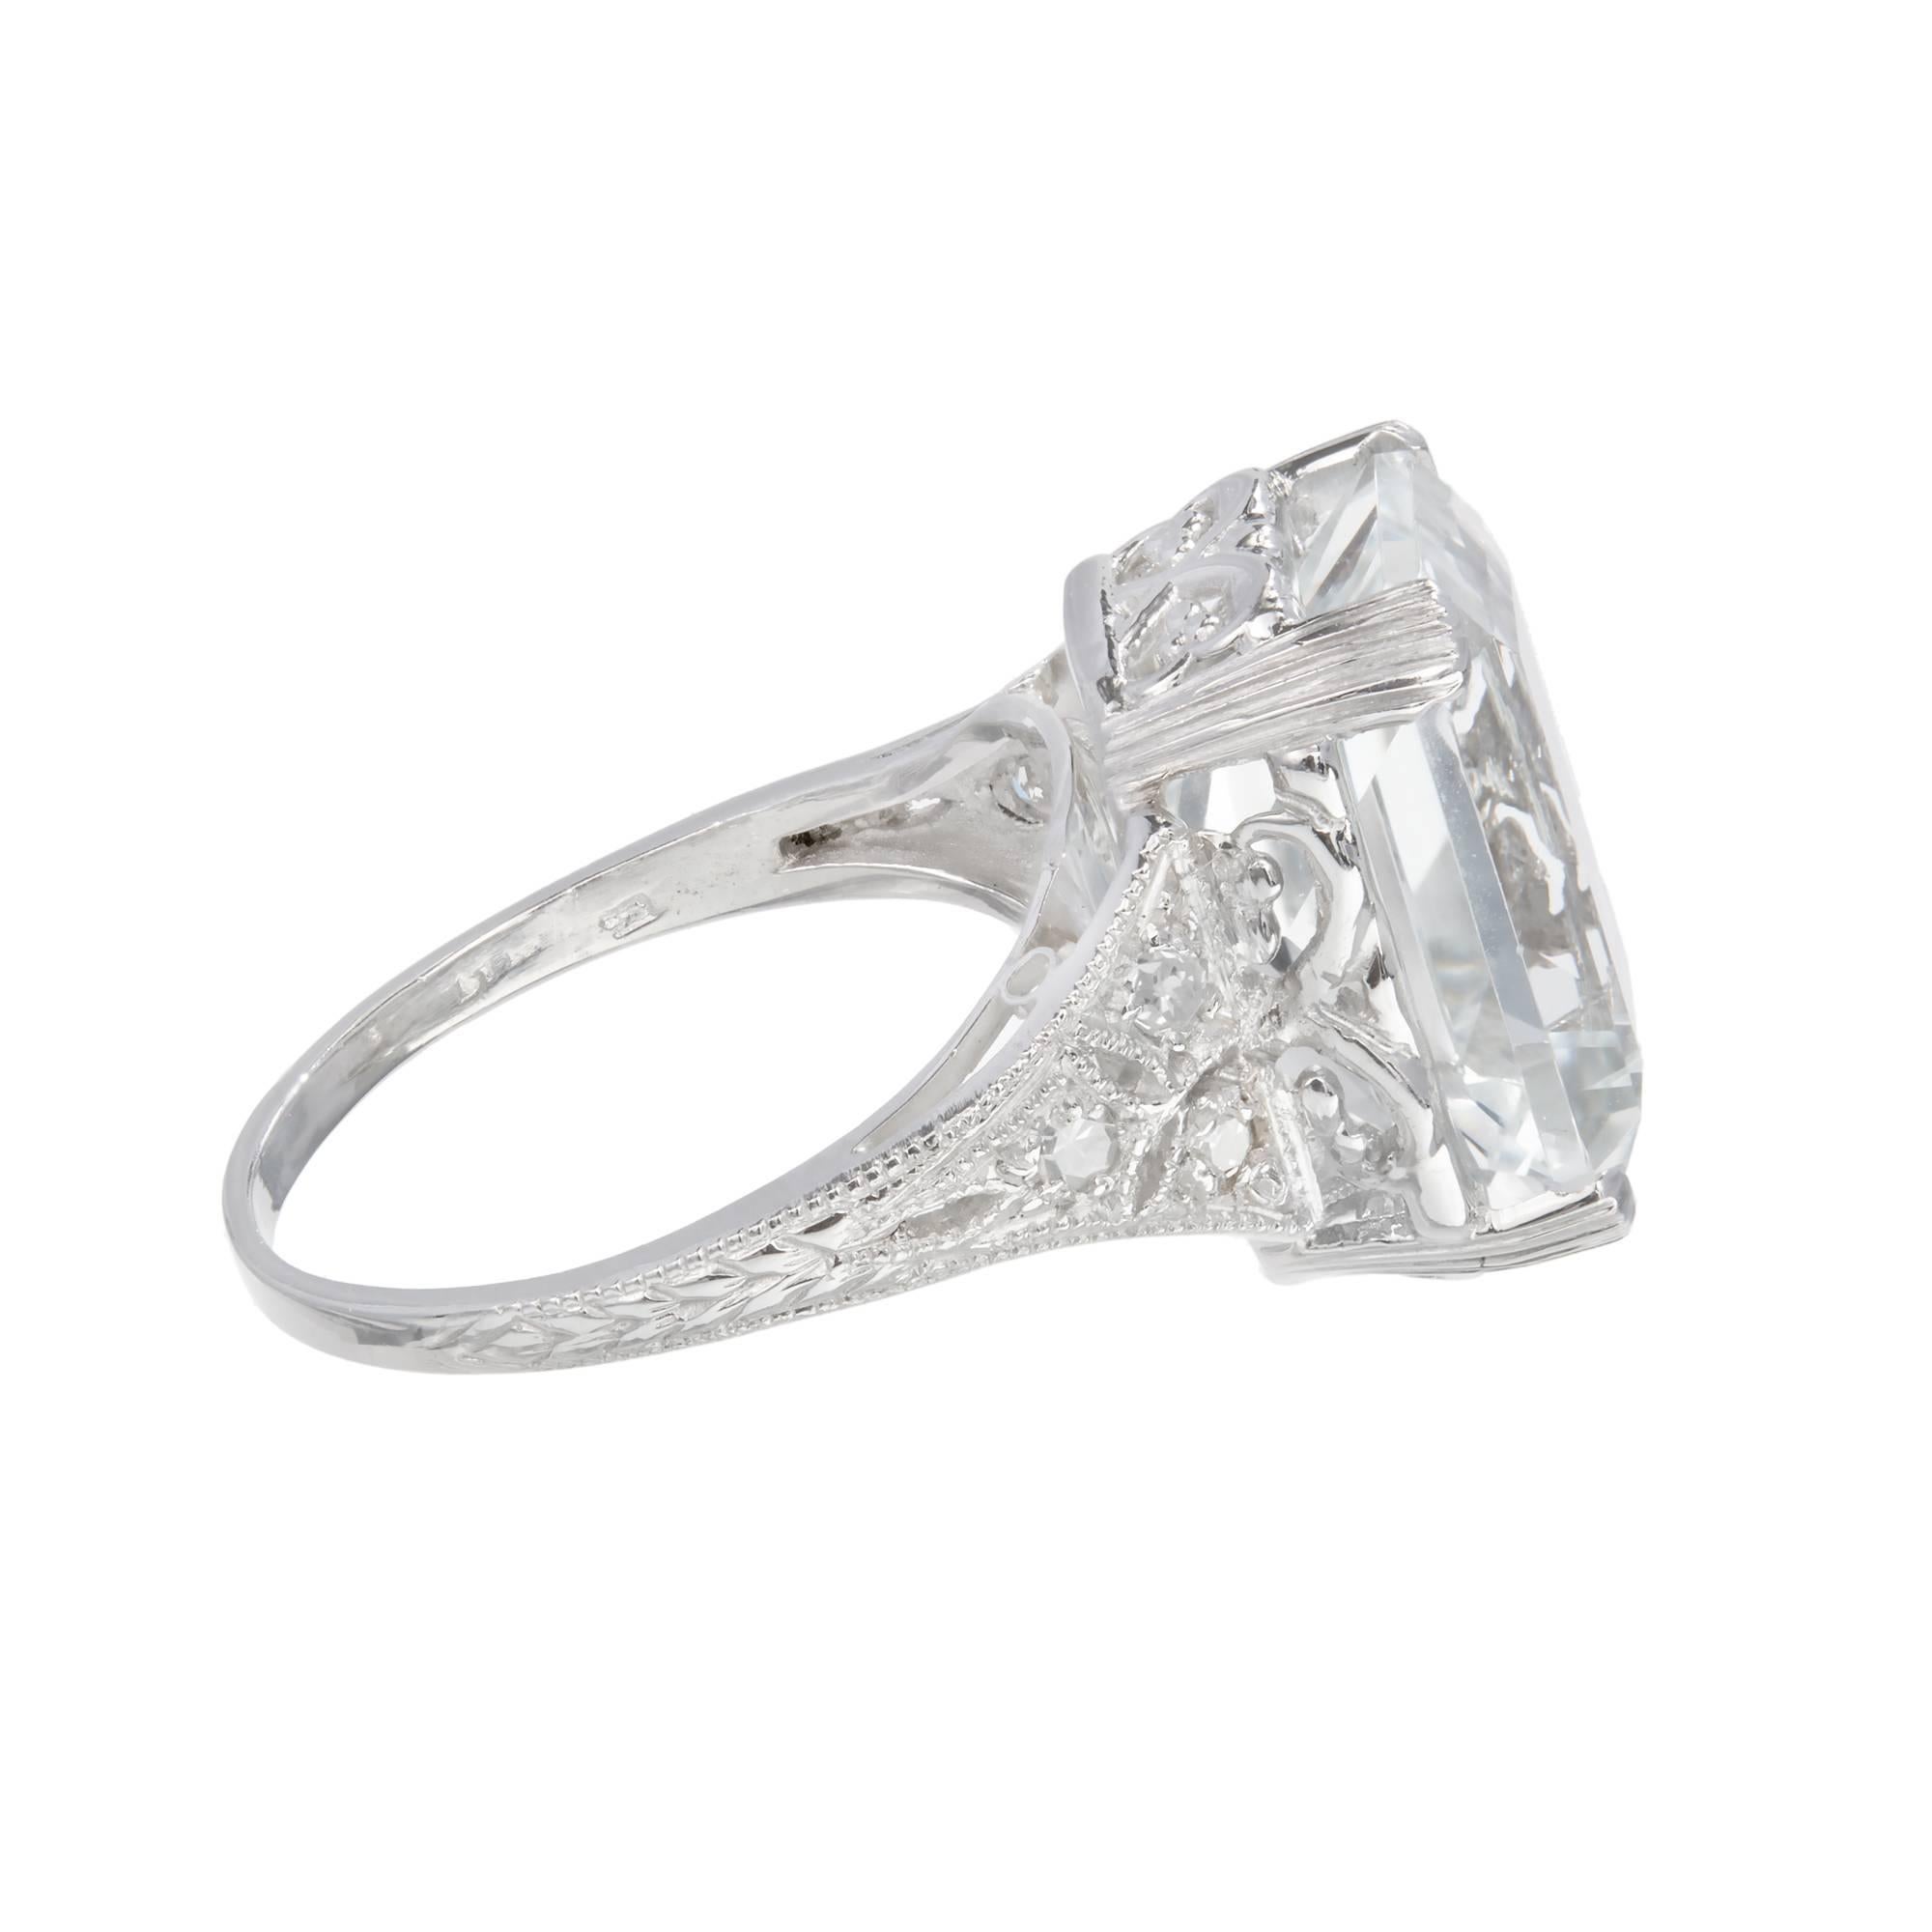 Emerald Cut Art Deco Natural Aquamarine Diamond Platinum Ring